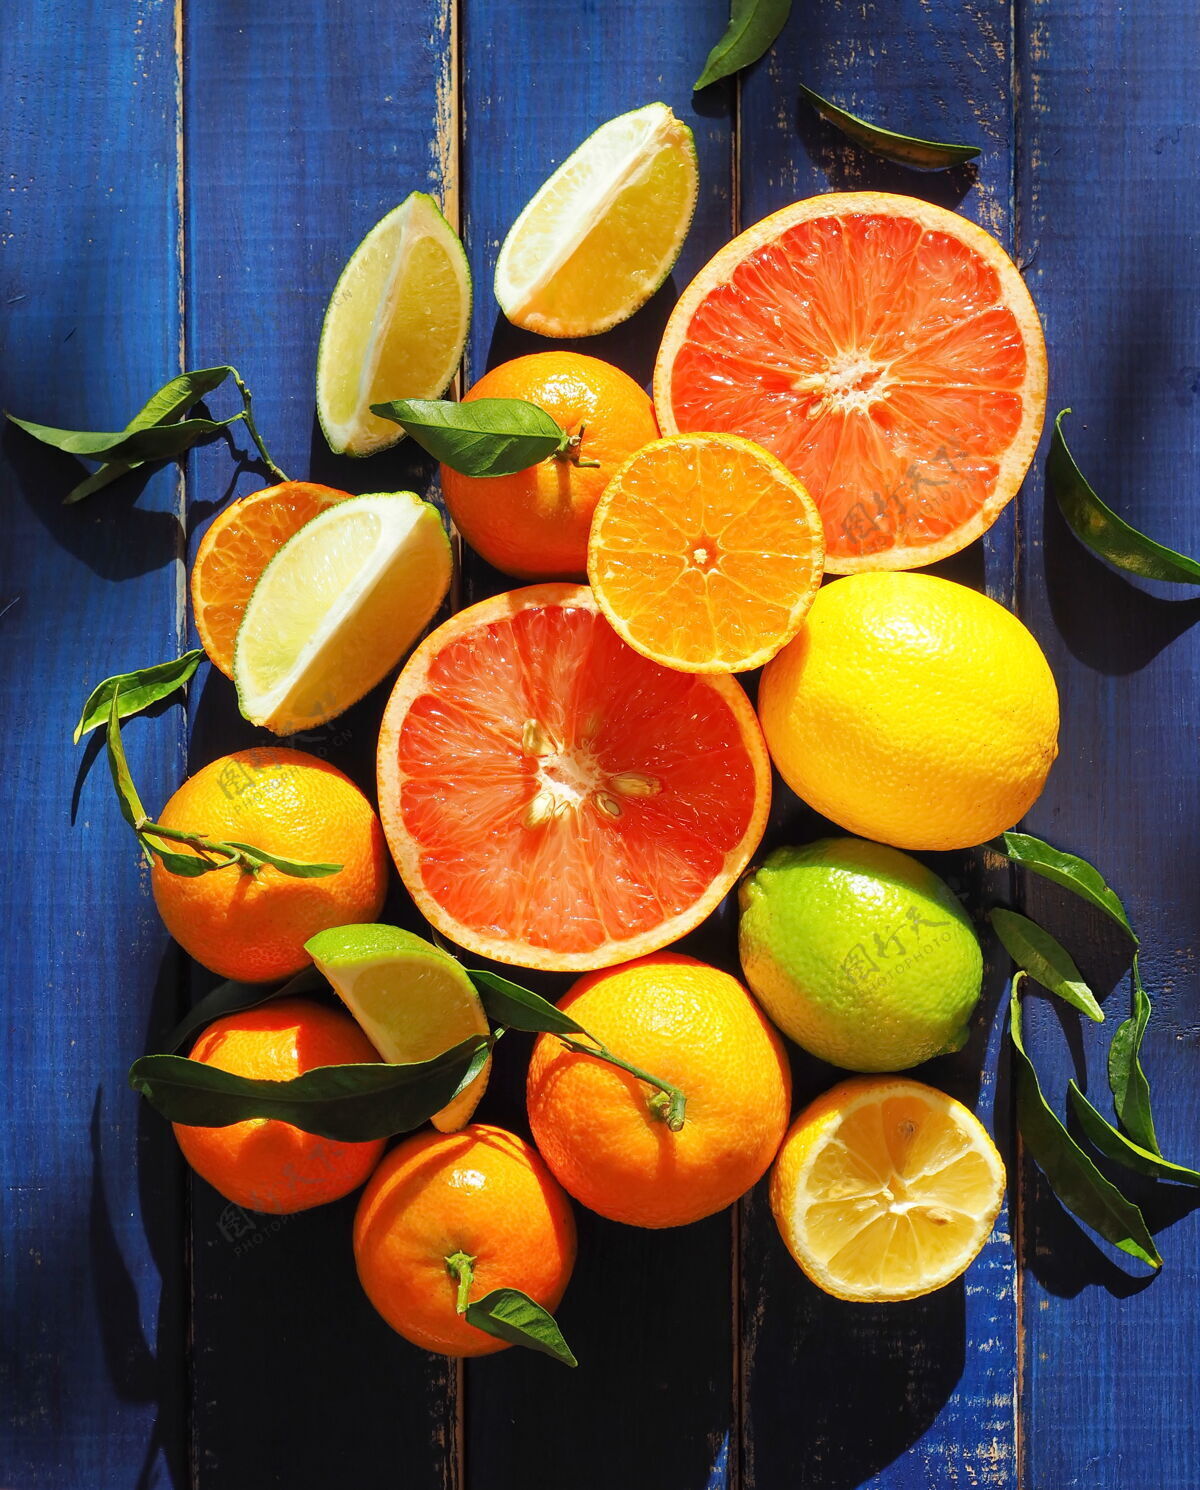 新鲜各种柑橘类水果-橙子 柠檬 酸橙 柑橘和葡萄柚橘子多汁酸橙